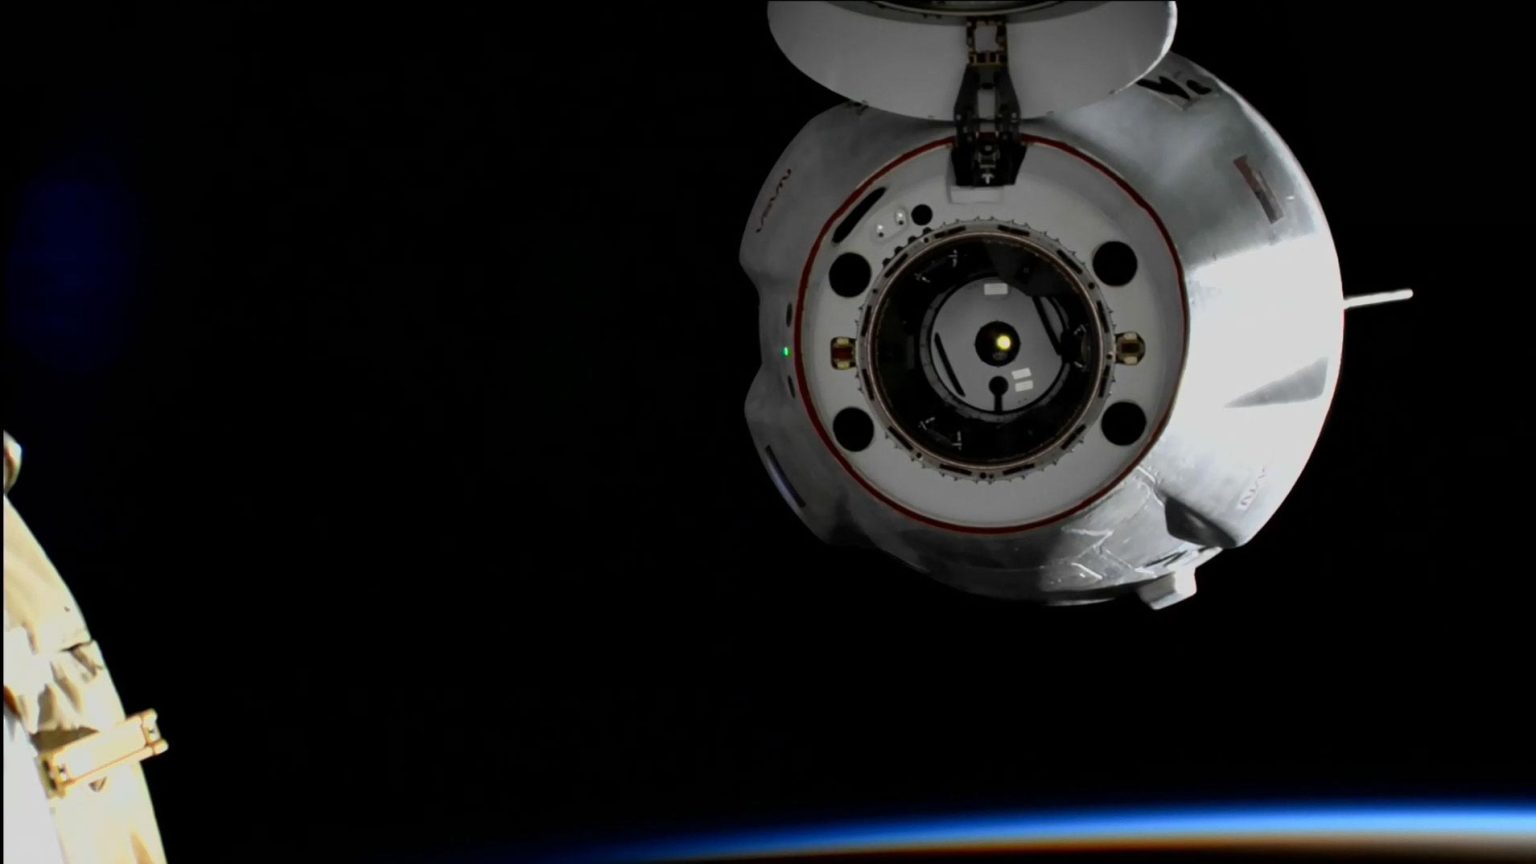 ngcb1 Esta semana @NASA: Artemis me muevo a Launchpad, Cargo Dragon parte, Luna alrededor del asteroide Polymele